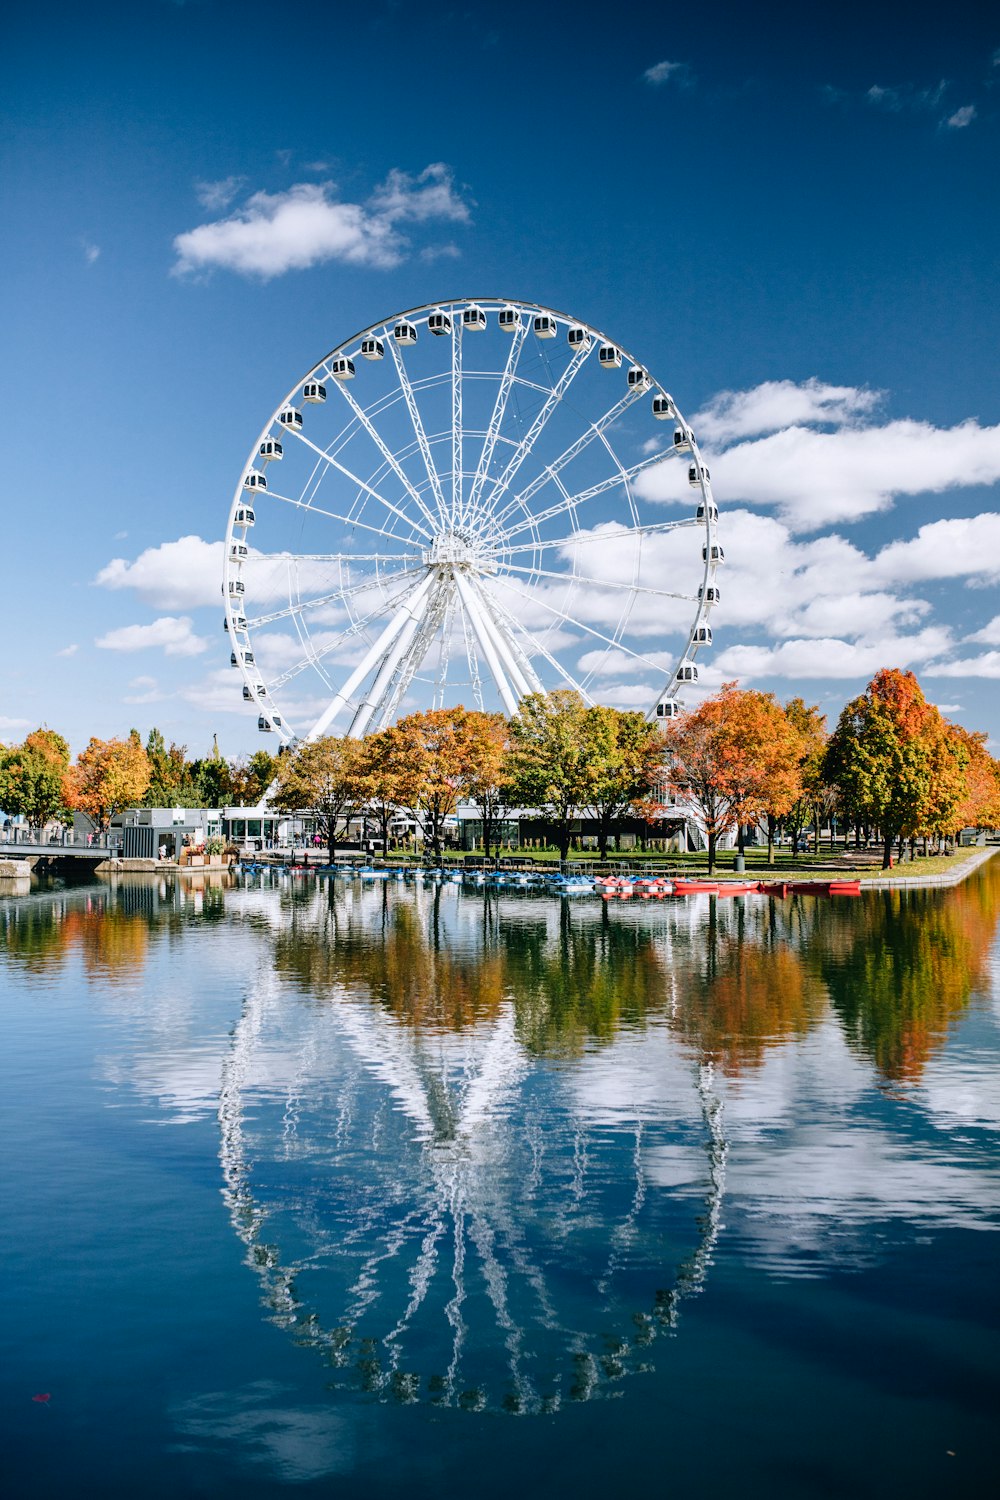 Ferris wheel beside trees near body of water